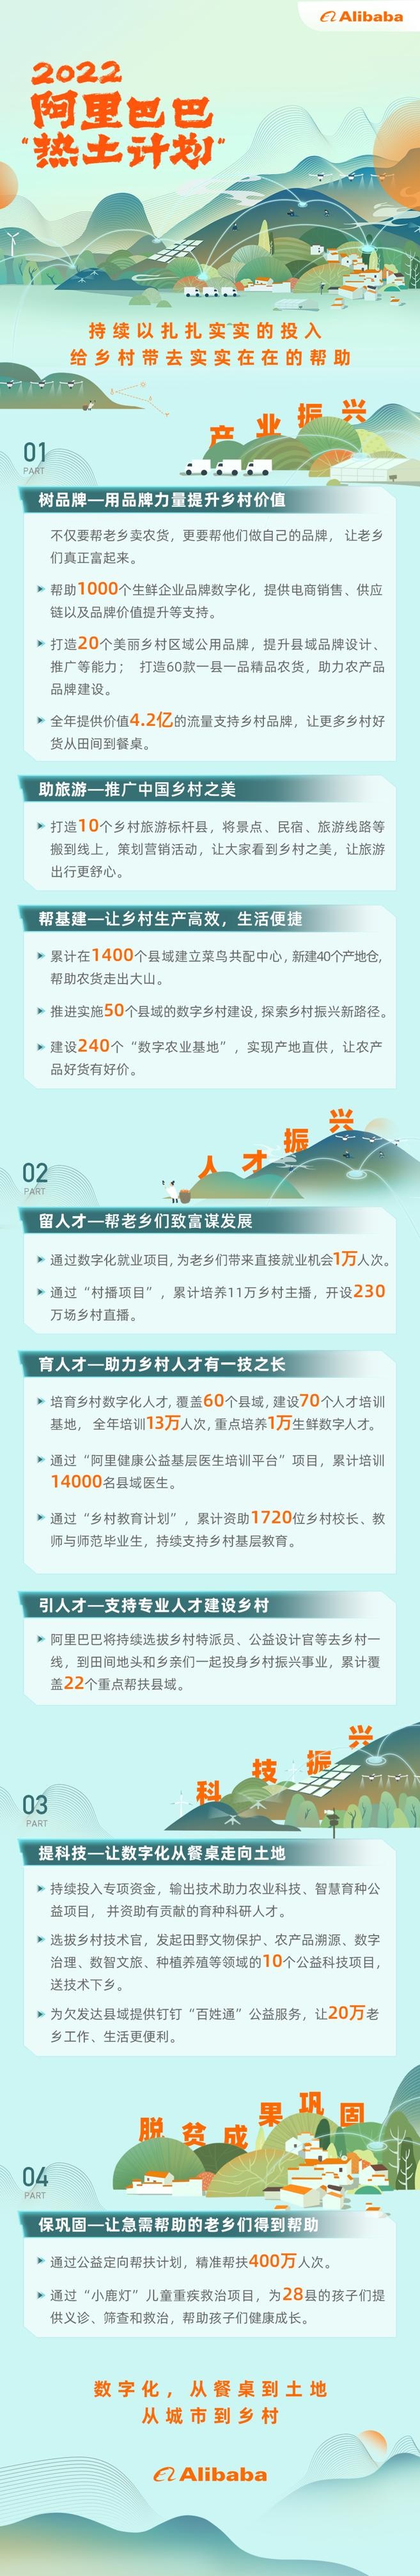 月26日电商报/阿里巴巴发布“热土计划2022”"